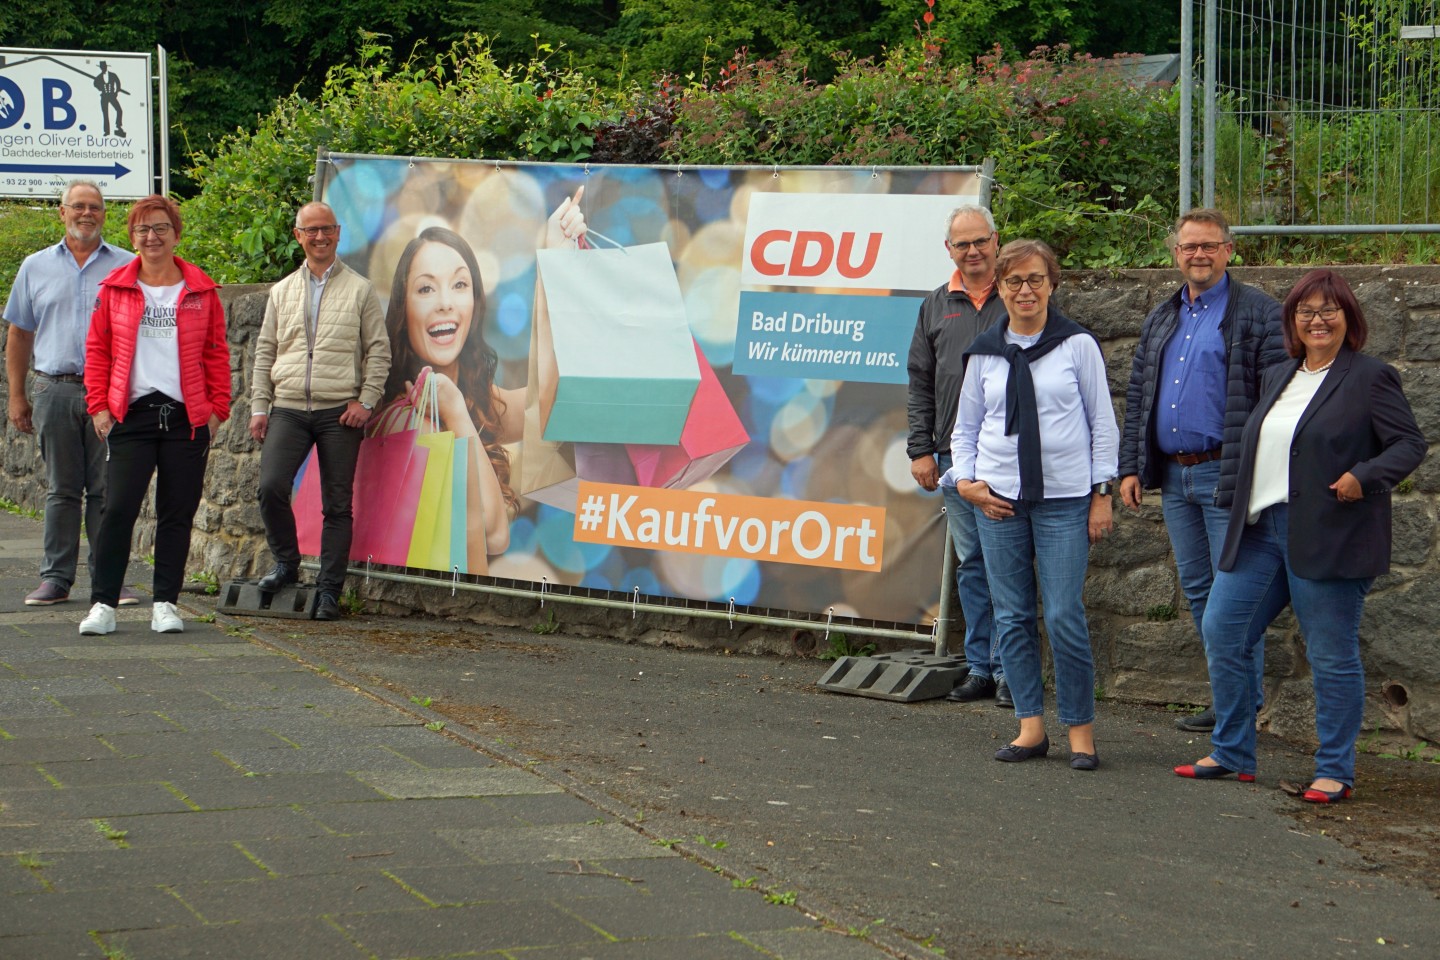 CDU kümmert sich – #KaufvorOrt, Kauf in Bad Driburg